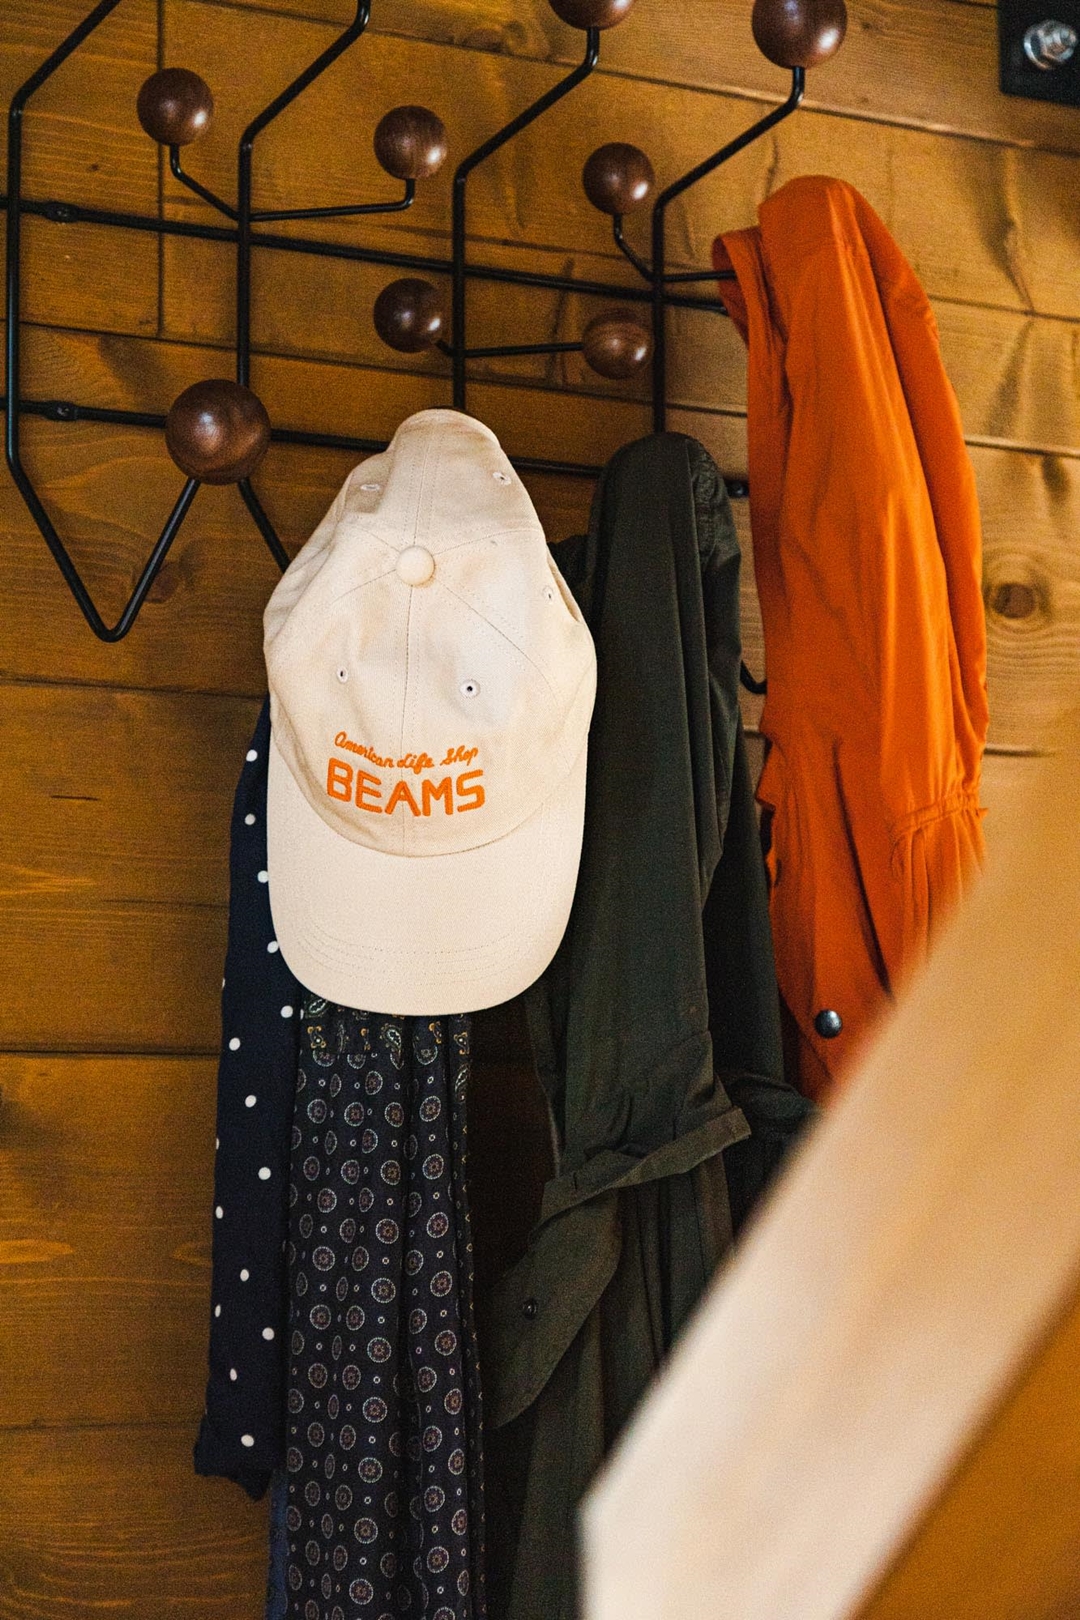 【45周年記念】BEAMSの初代ロゴ「American Life Shop BEAMS」を使用したアイテムが11/13から順次発売 (ビームス 45th)